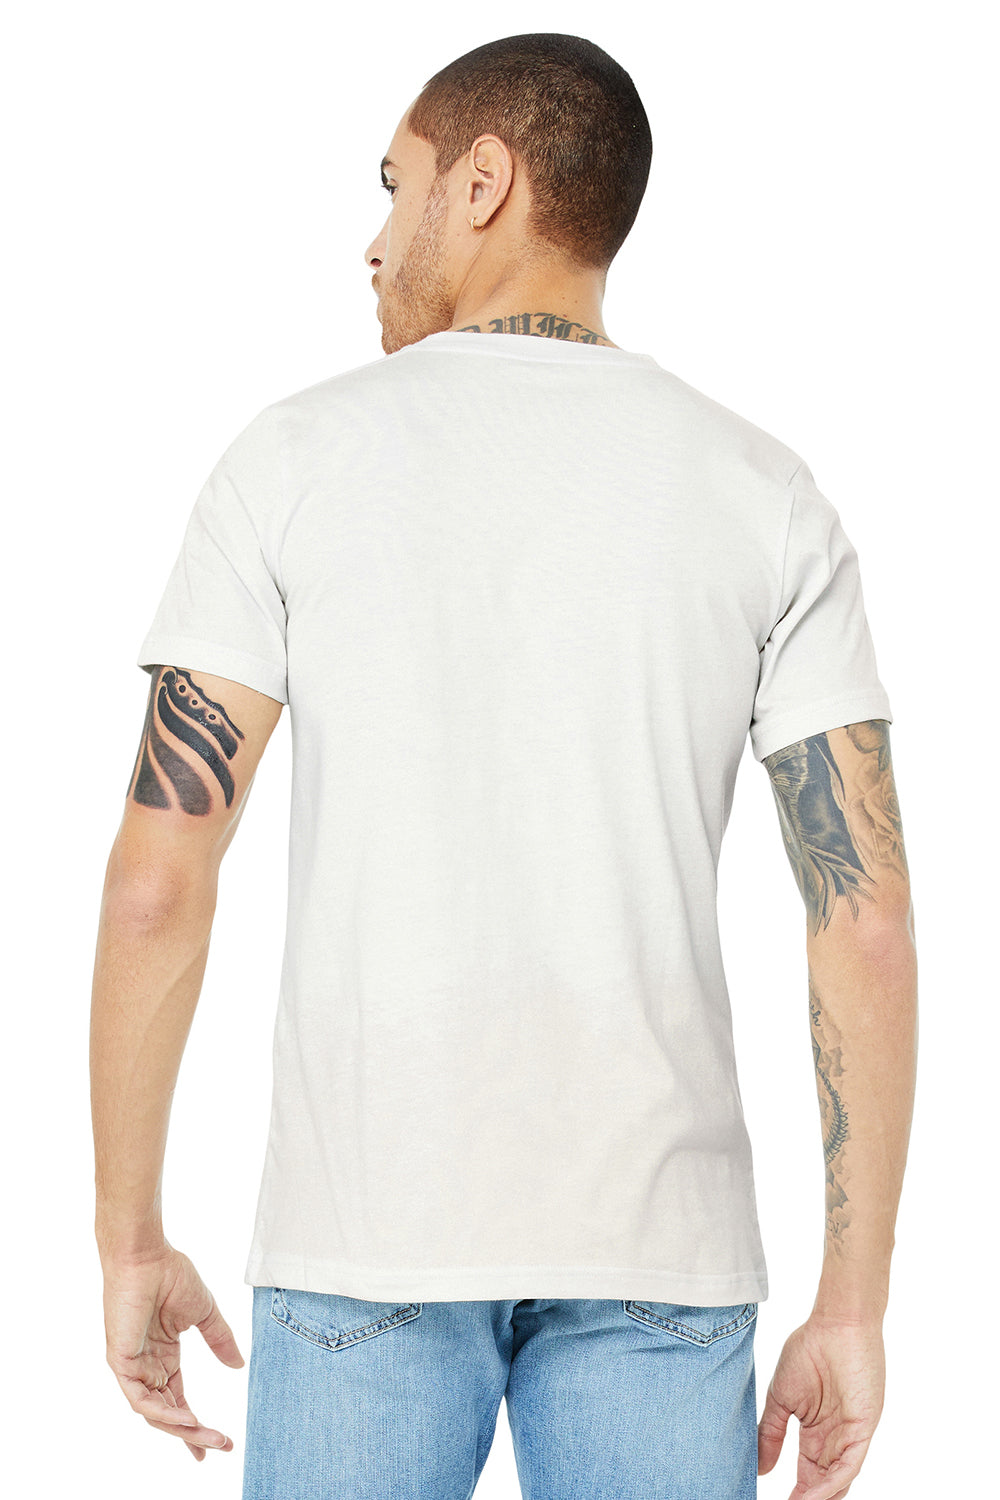 Bella + Canvas BC3005/3005/3655C Mens Jersey Short Sleeve V-Neck T-Shirt Vintage White Model Back